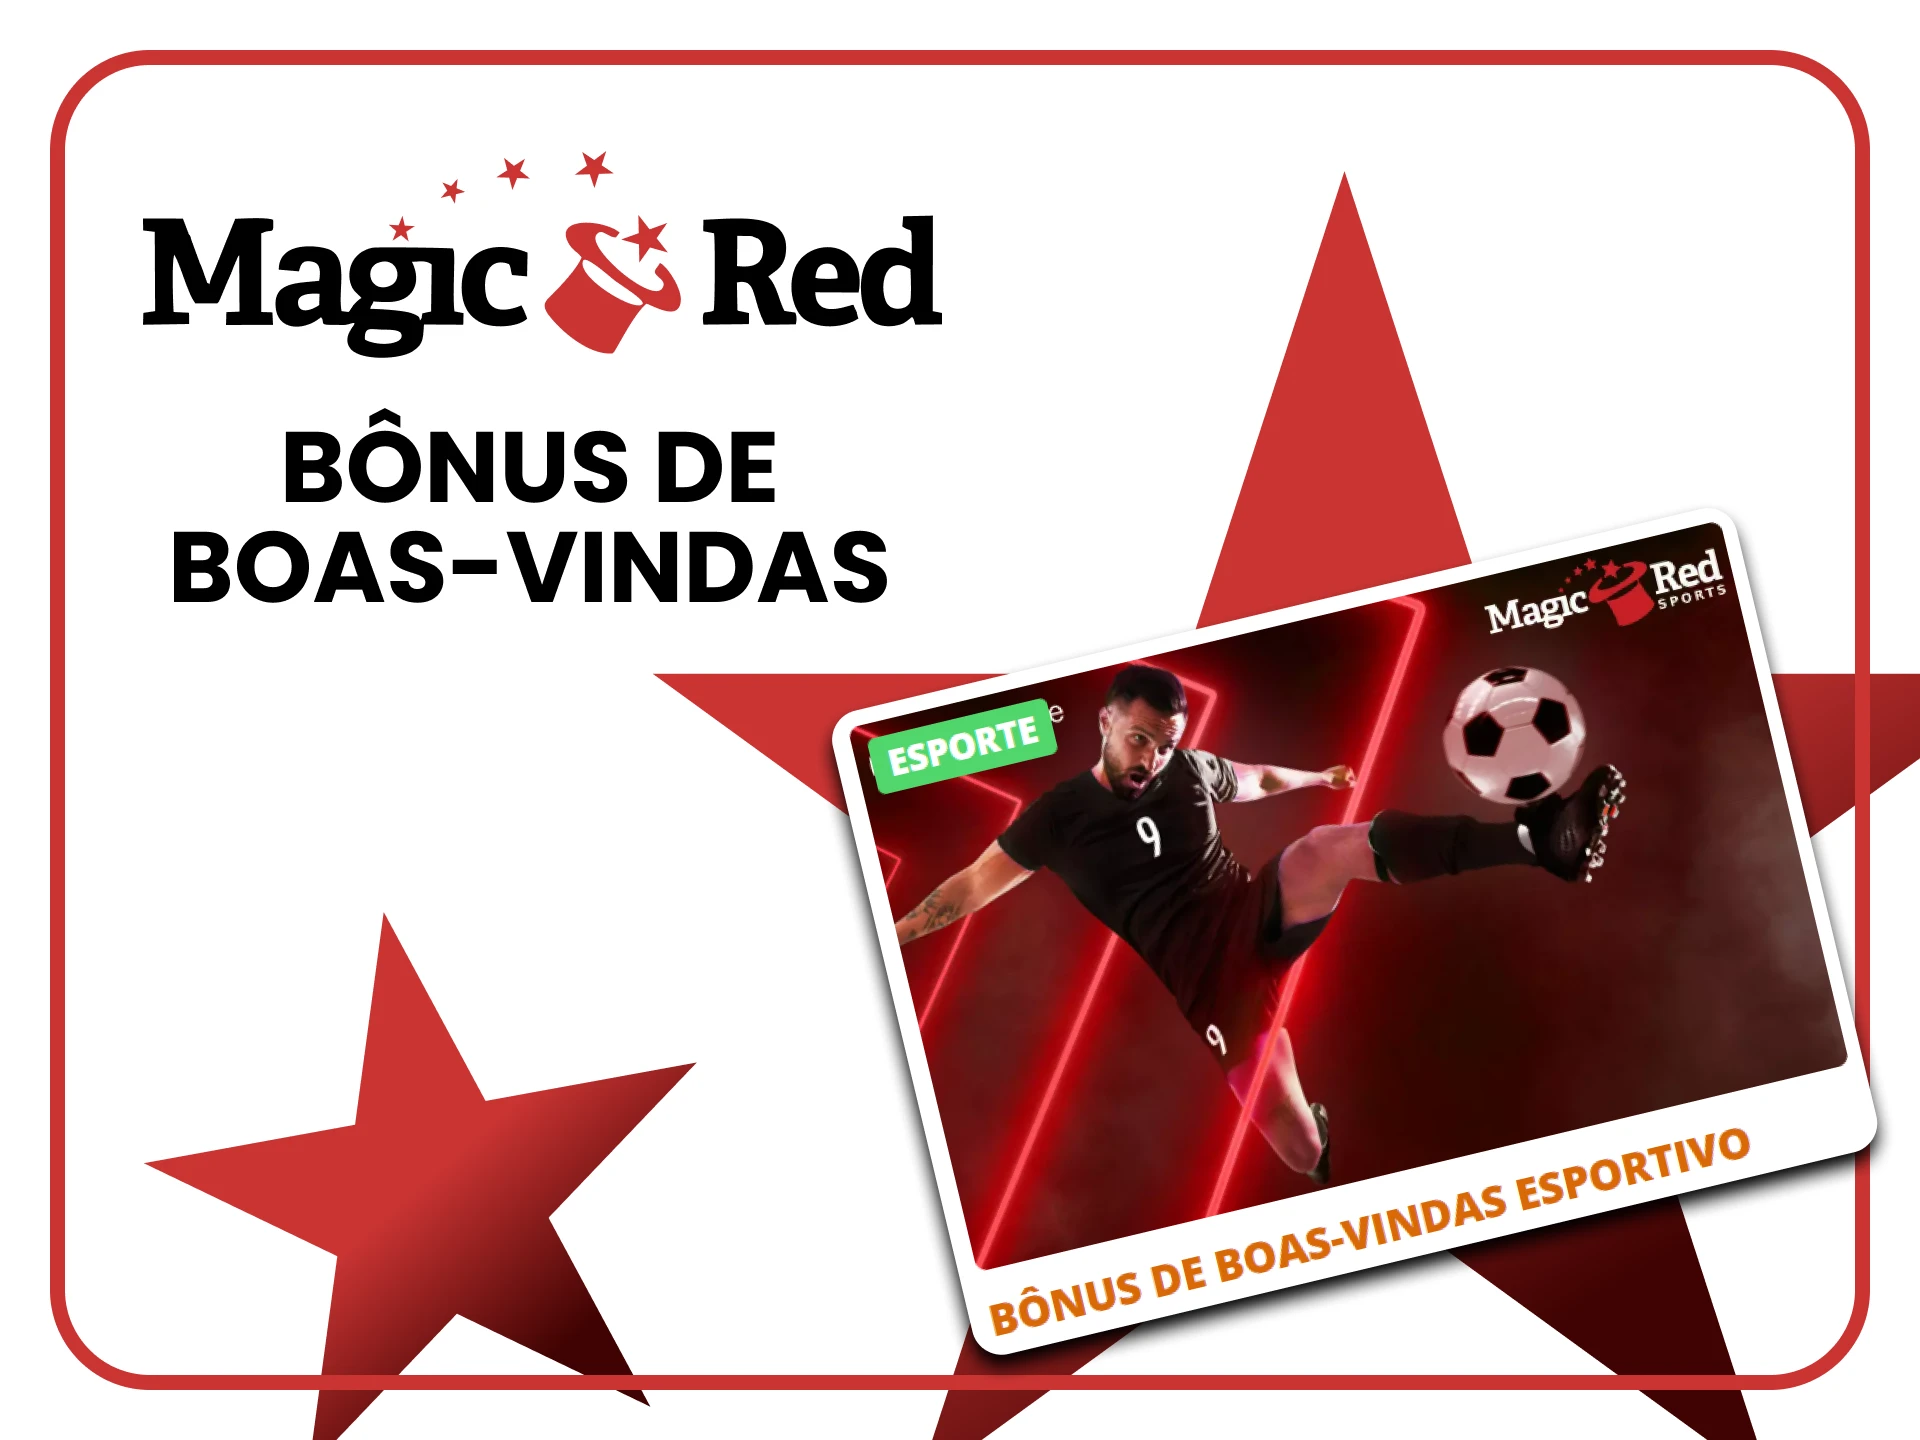 Magic Red oferece um bônus para apostas em futebol.